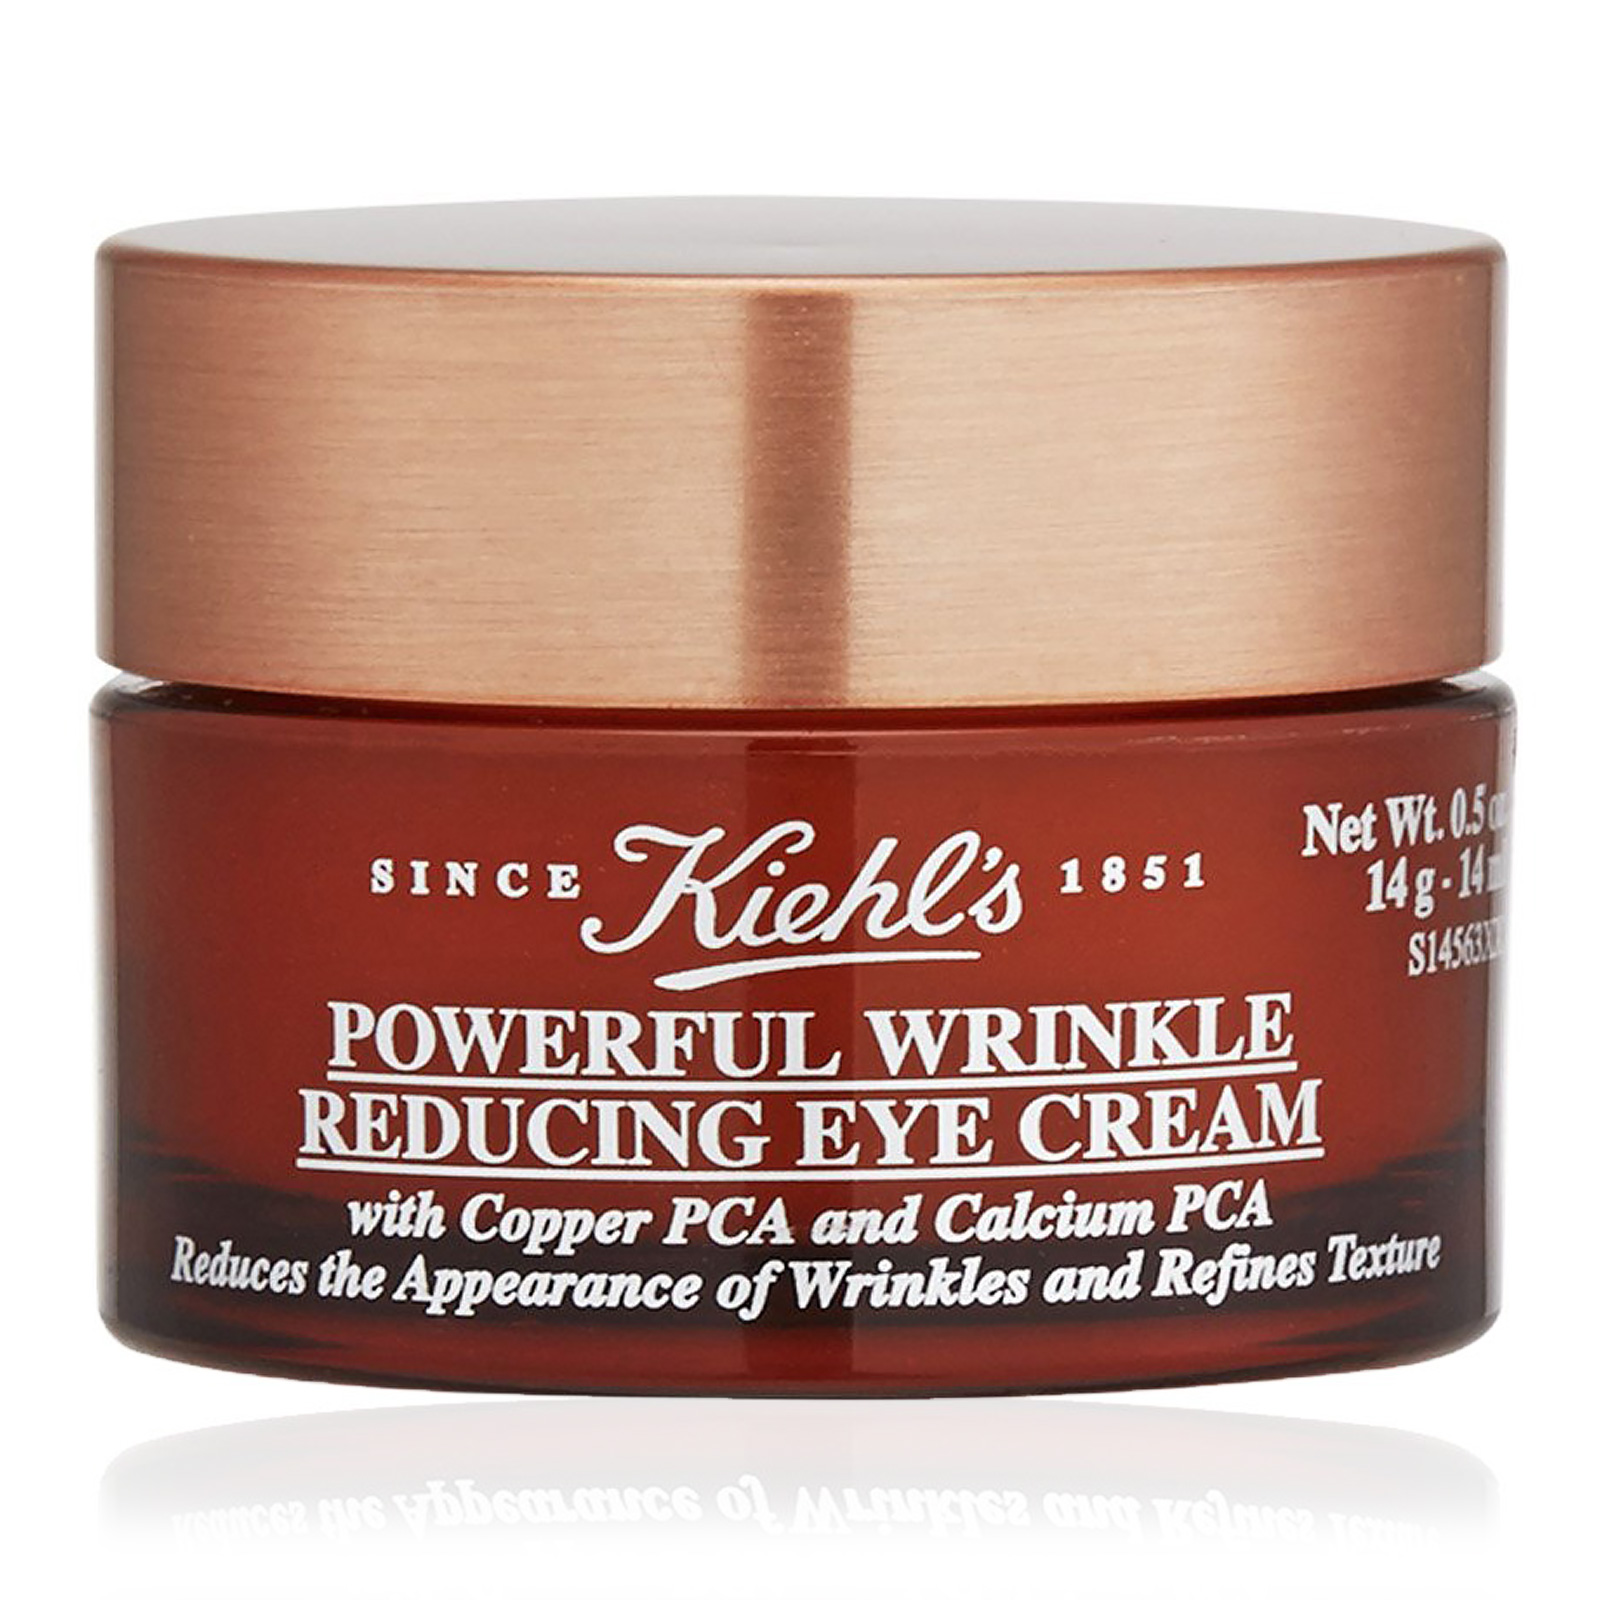 Powerful Wrinkle Reducing Eye Cream 